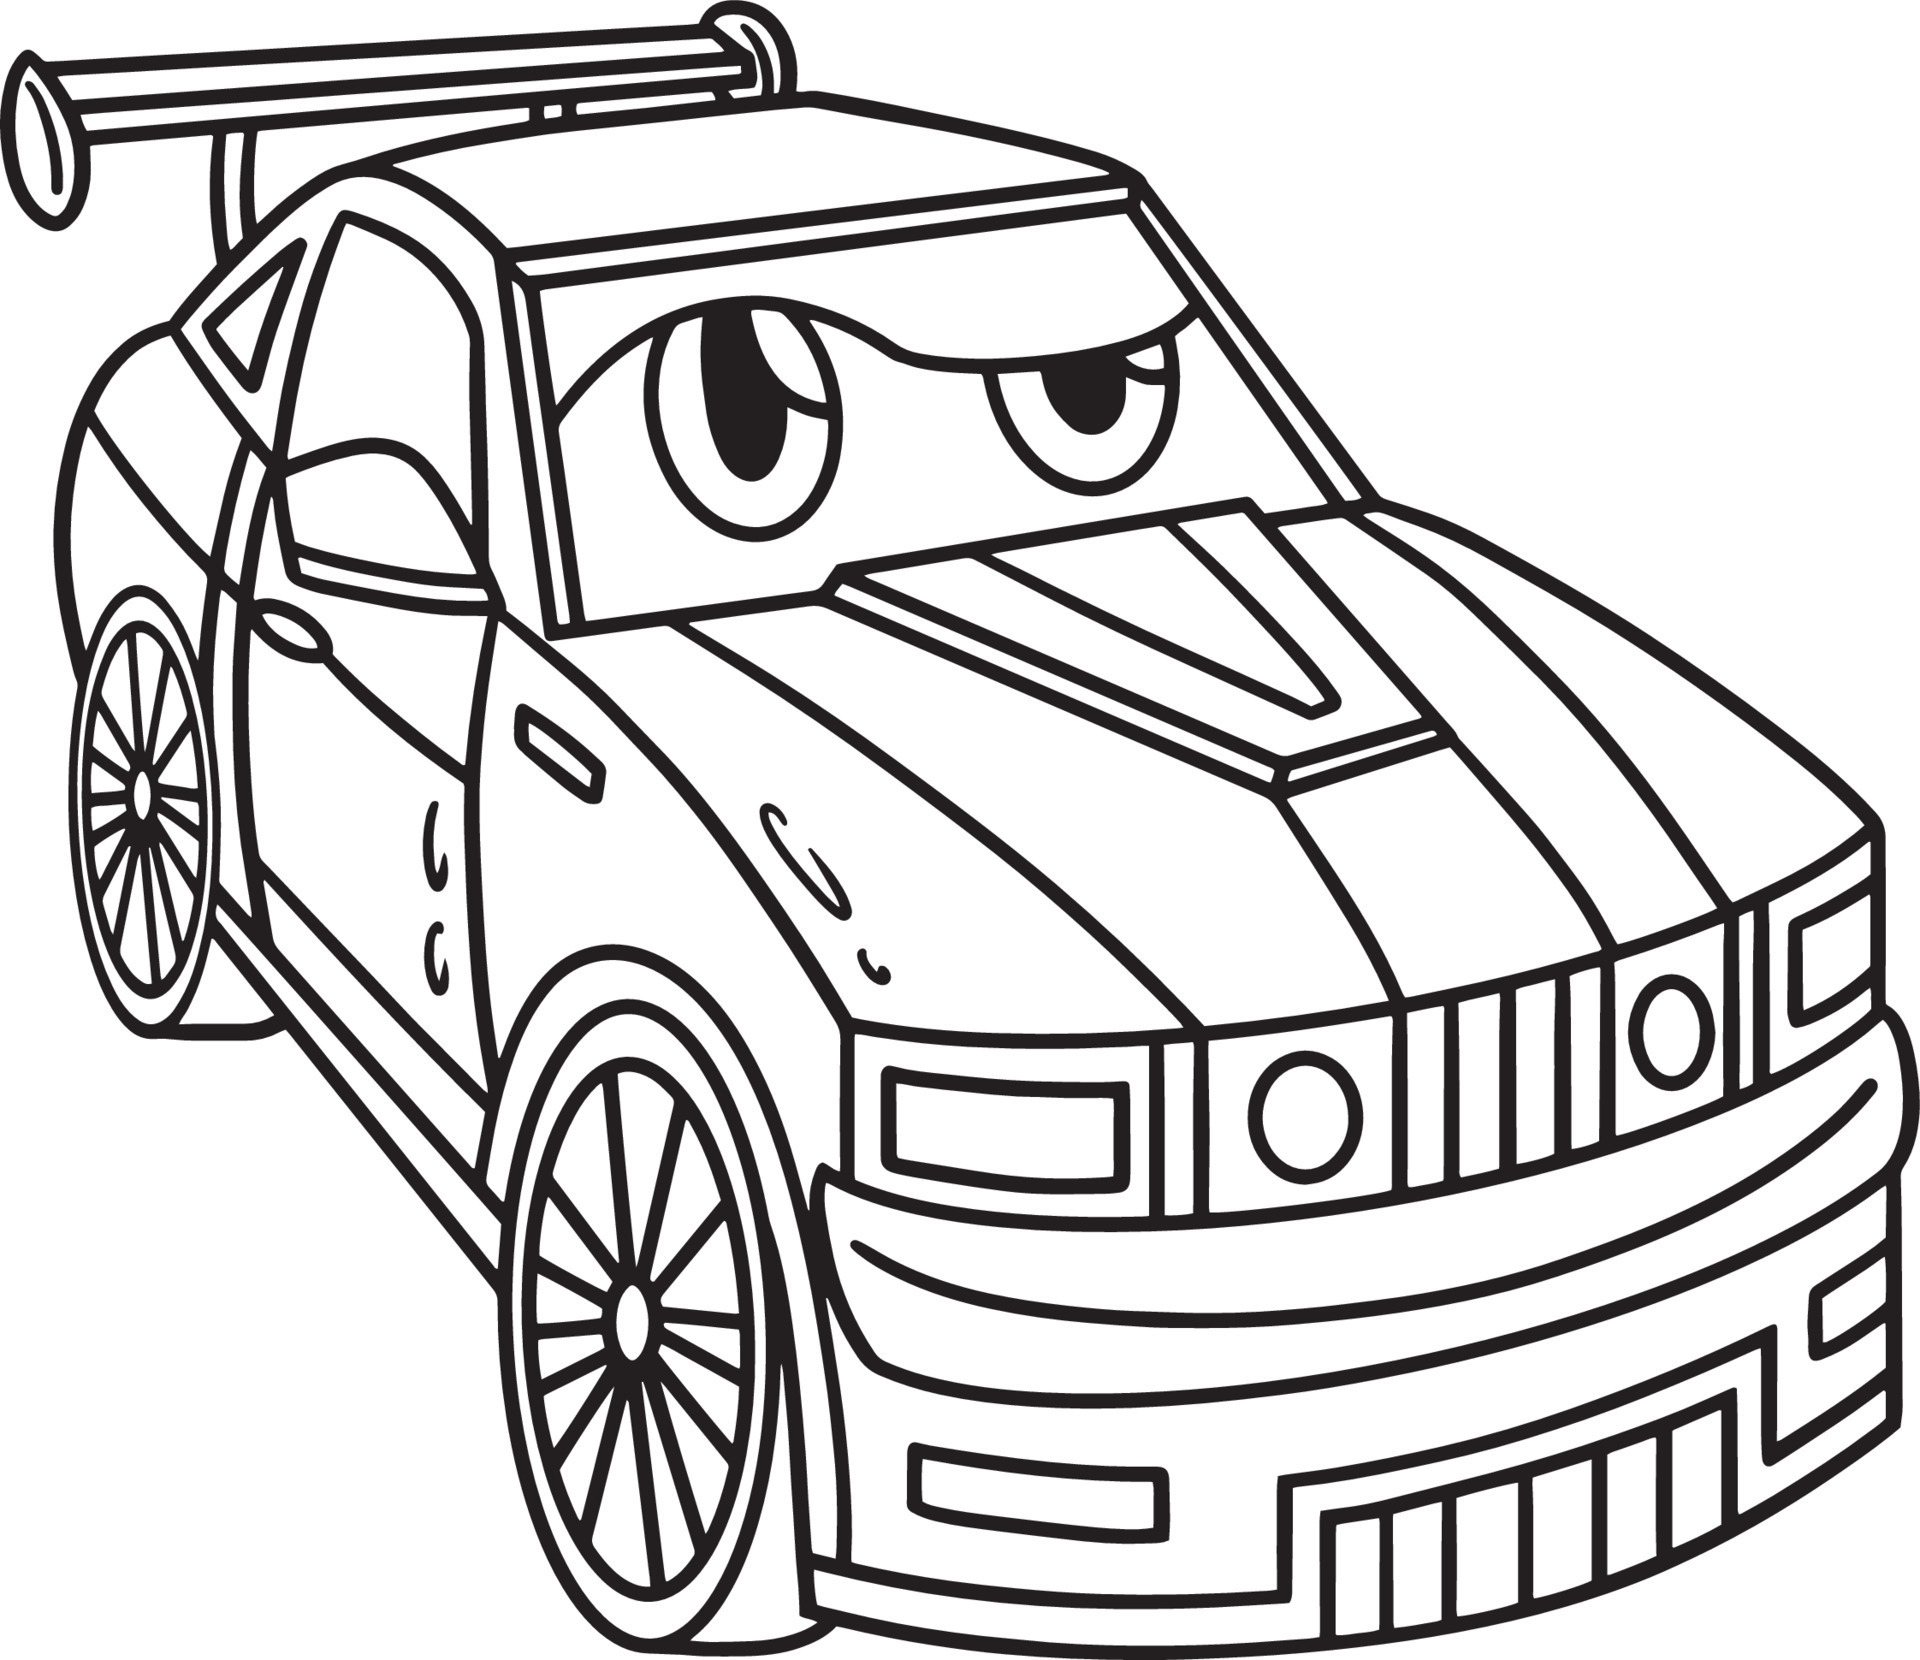 Desenho para colorir Corrida de carros em preto e branco · Creative Fabrica